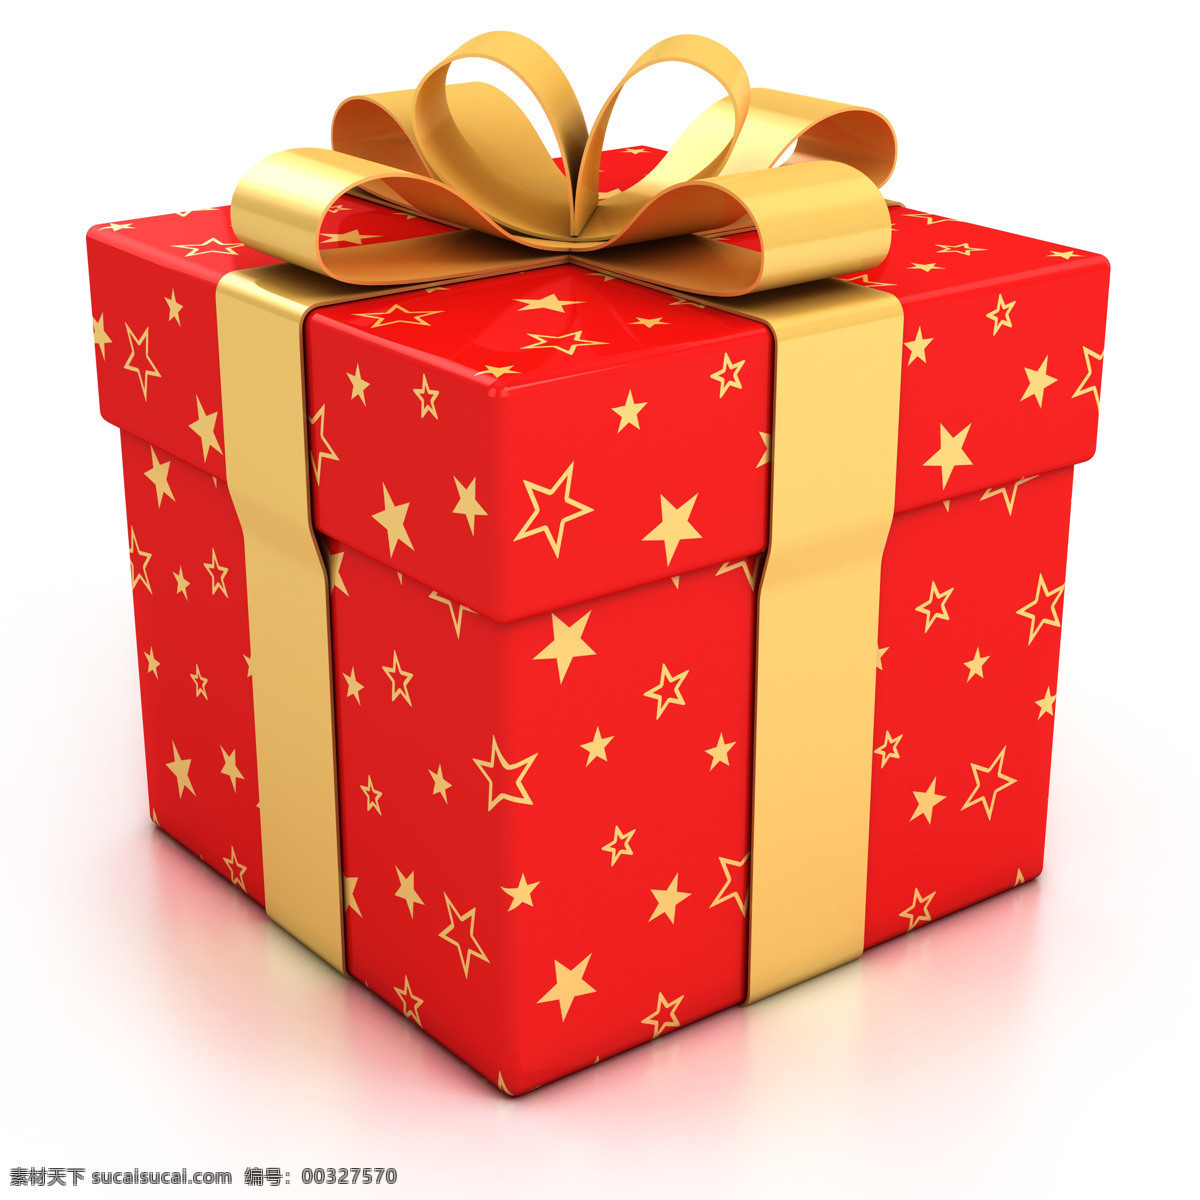 红色礼物盒 礼物 礼物盒 蝴蝶结 蝴蝶结丝带 五角星 金色丝带 节日庆典 生活百科 白色